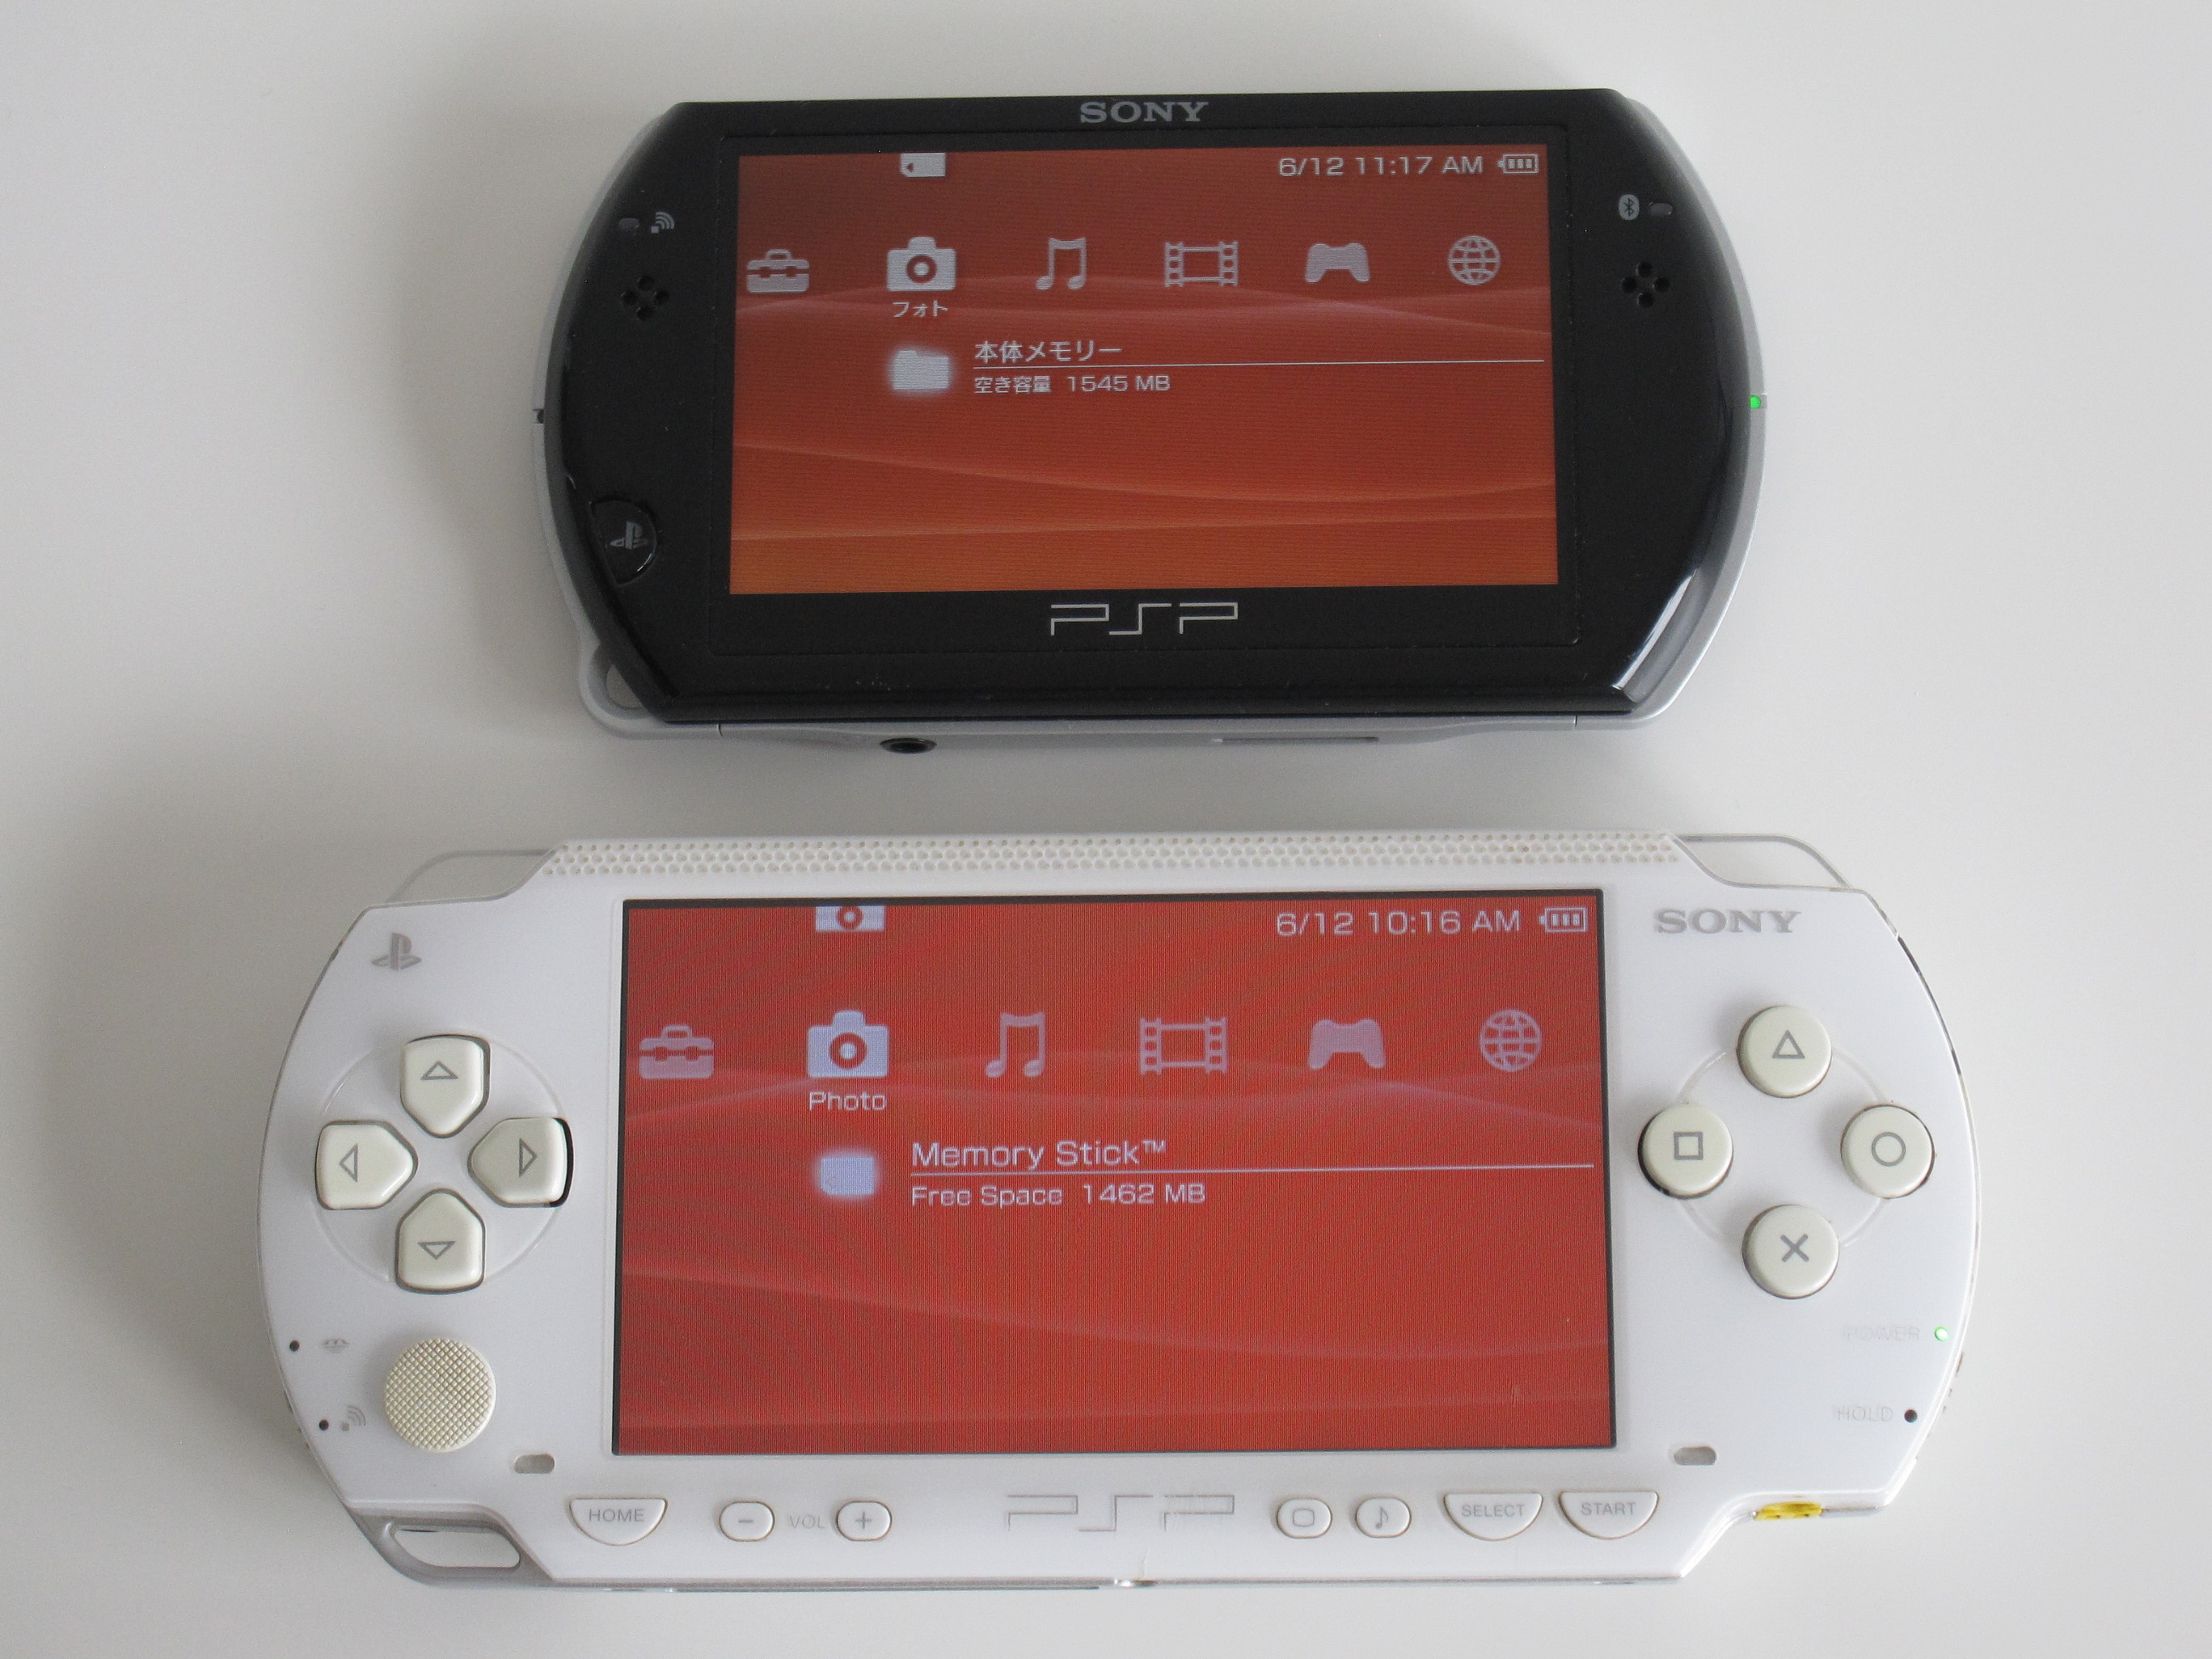 移动设备收藏展示第11集索尼PSP 系列| Bill Haofei Gong's Blog